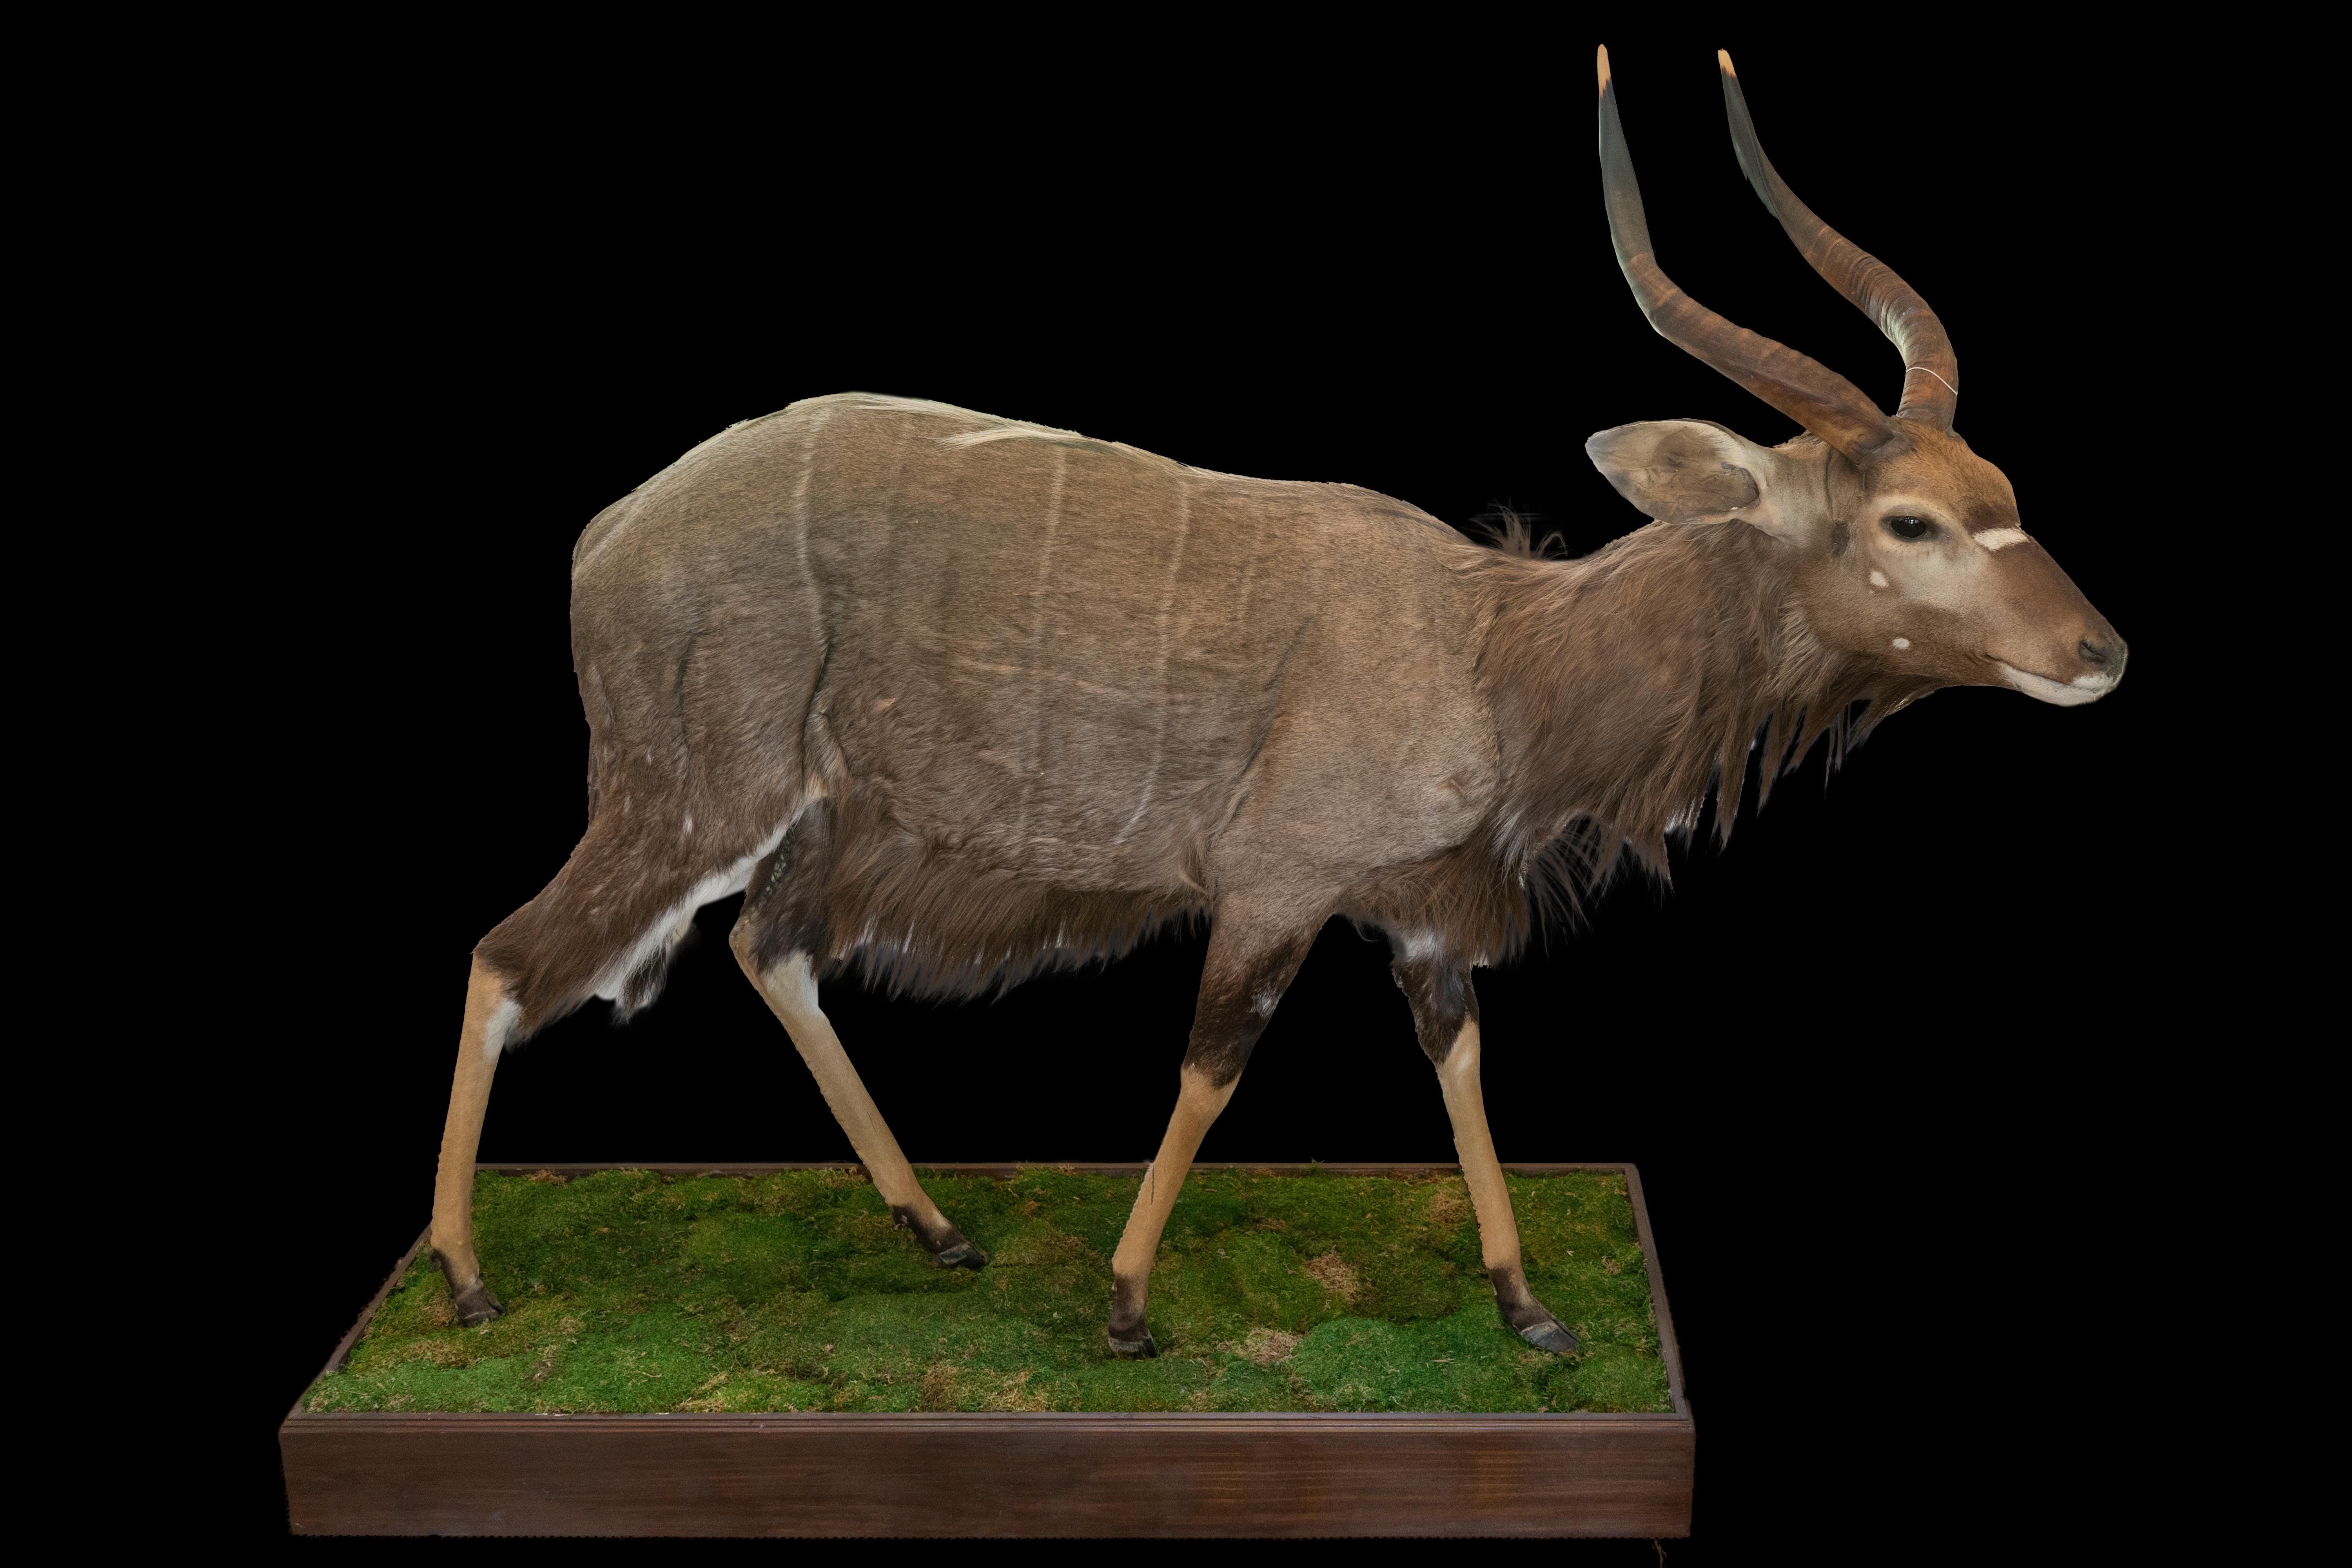 Diese Nyala-Taxidermie in Originalgröße ist ein beeindruckendes Stück, das die Schönheit und Majestät dieser prächtigen afrikanischen Antilope widerspiegelt. Auf einem naturalistischen grünen Grassockel montiert, misst diese Passepartout ca. 70